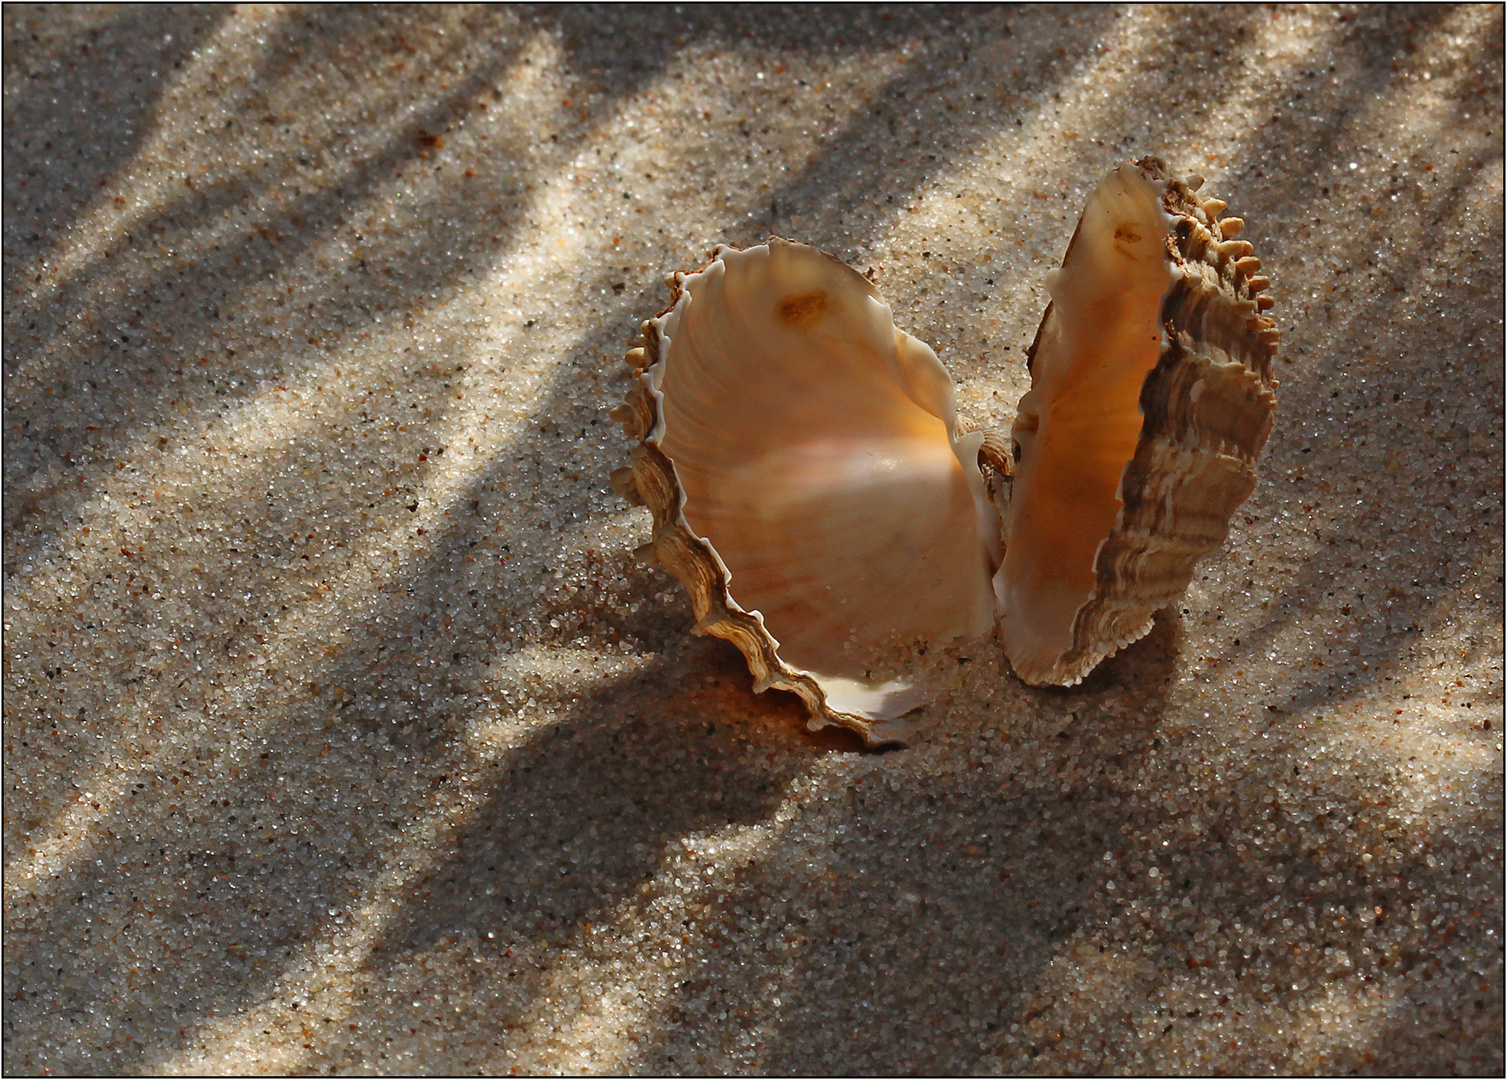 Muscheliges im warmen Sand.